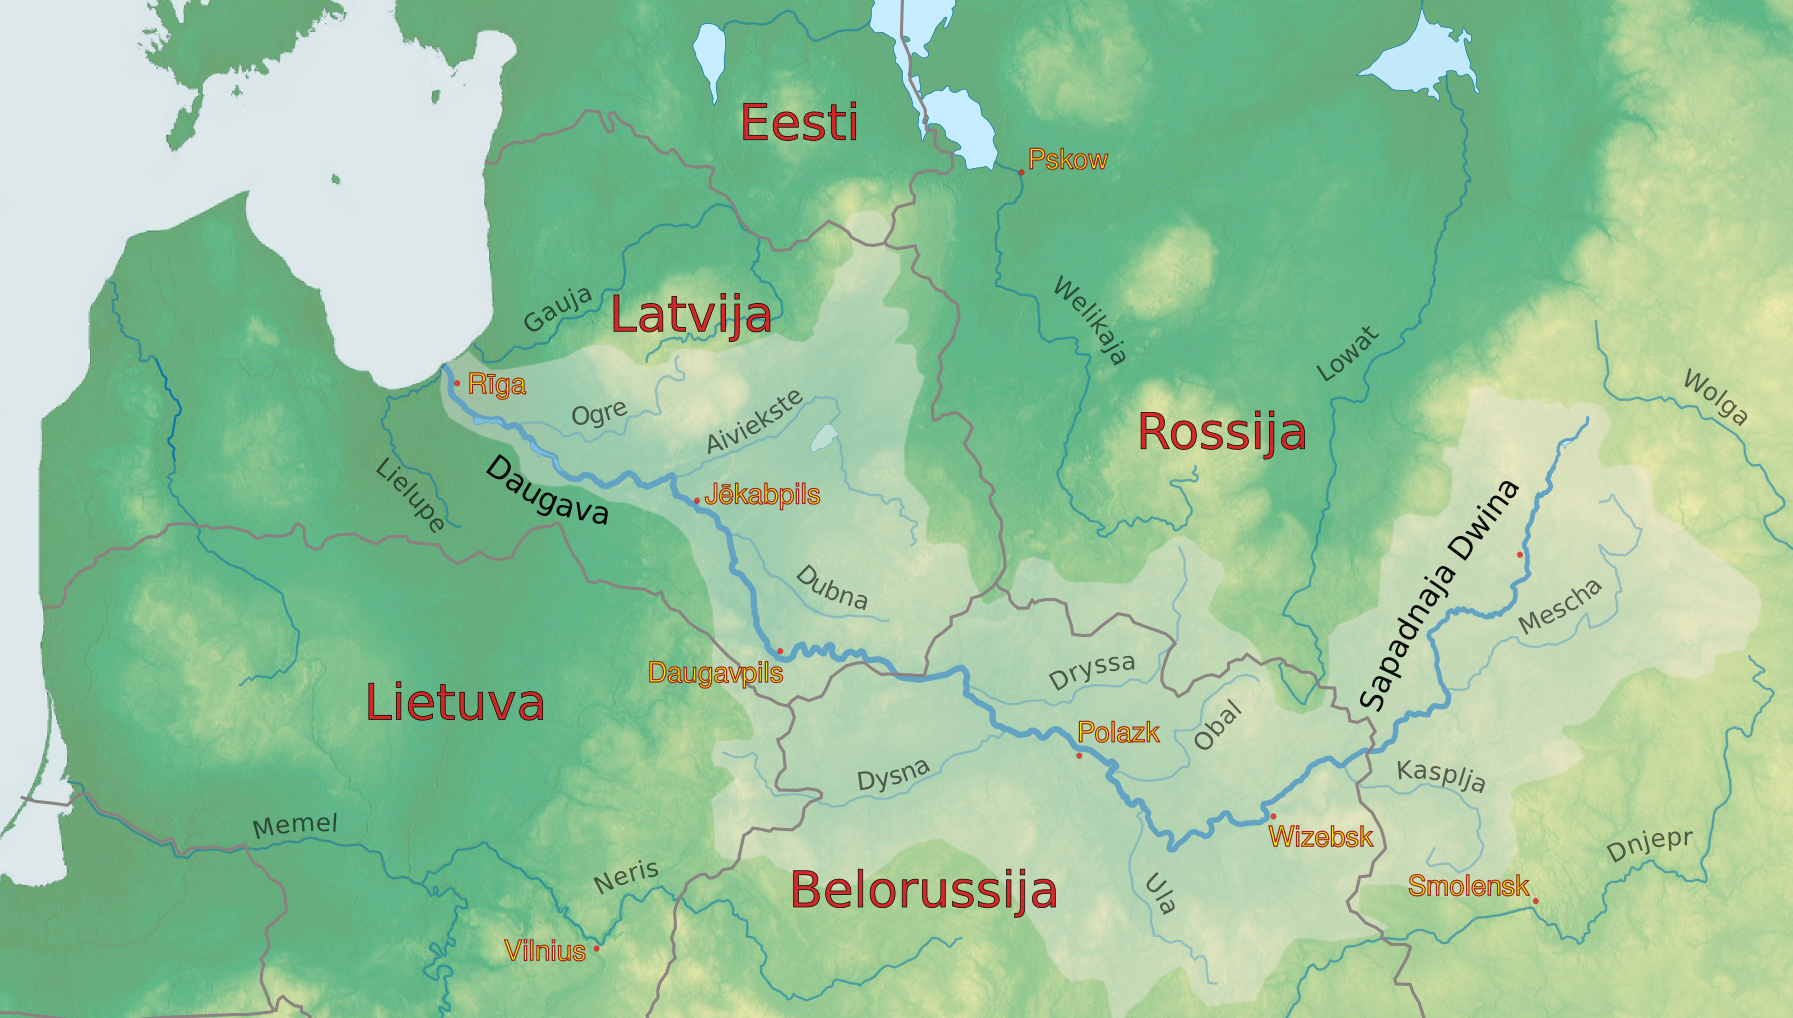 Бассейн реки западной двины. Карта реки Западная Двина (Даугава). Бассейн реки Западная Двина. Бассейн реки Западная Двина на карте. Река Западная Двина на карте Европы.